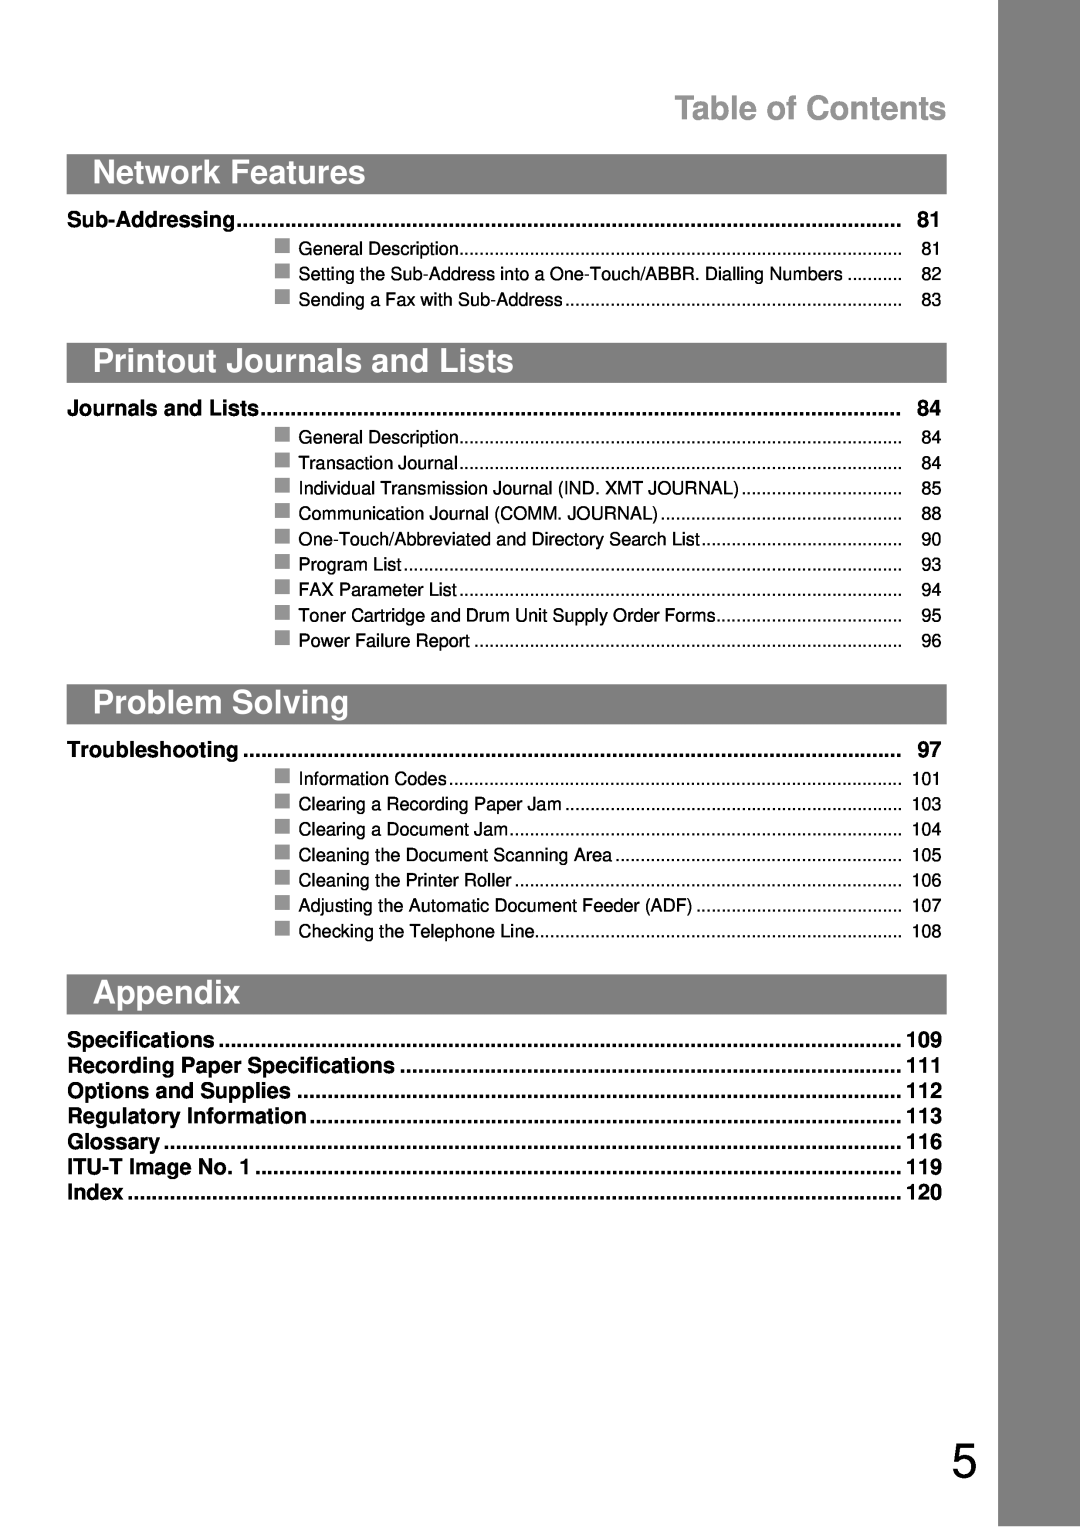 Castelle UF-490 appendix Table of Contents, Network Features, Printout Journals and Lists, Problem Solving, Appendix 